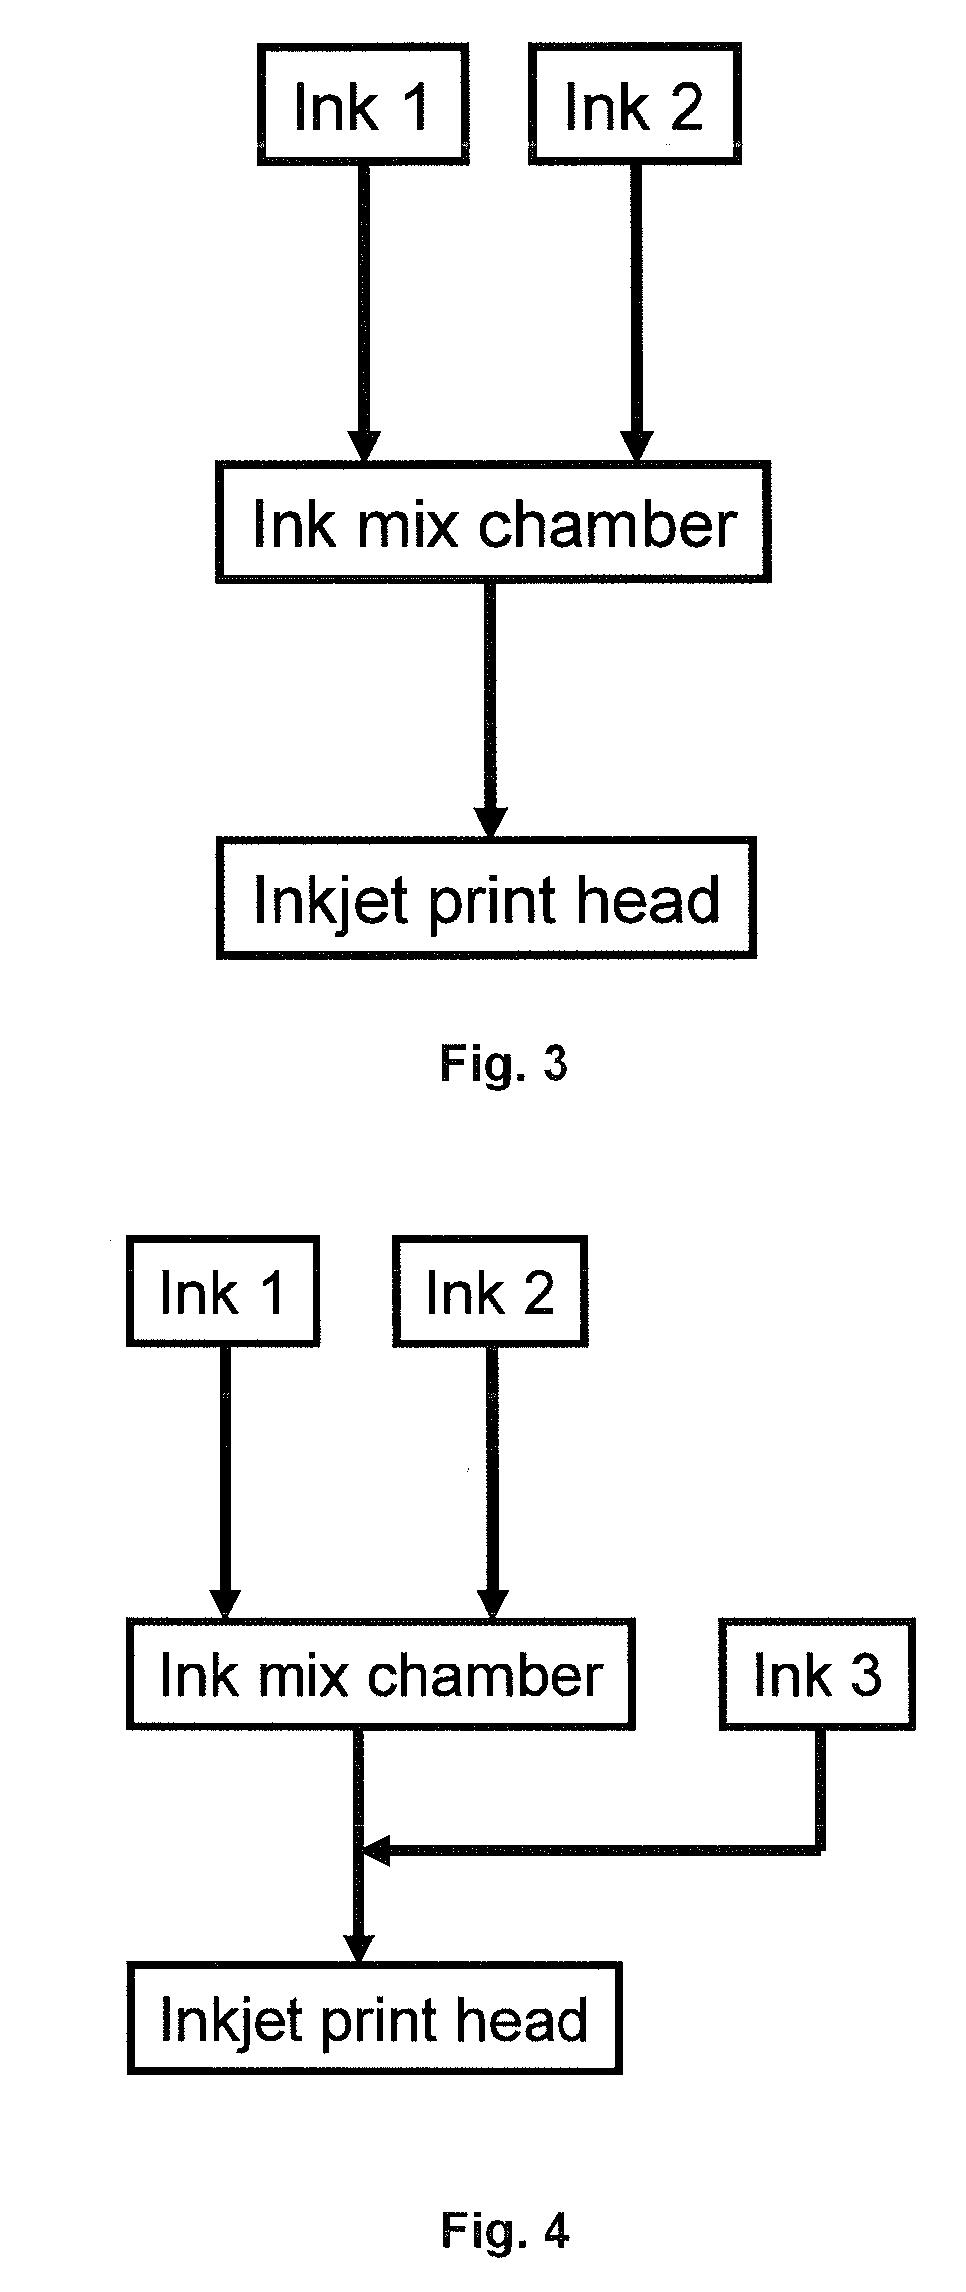 3d-inkjet printing methods